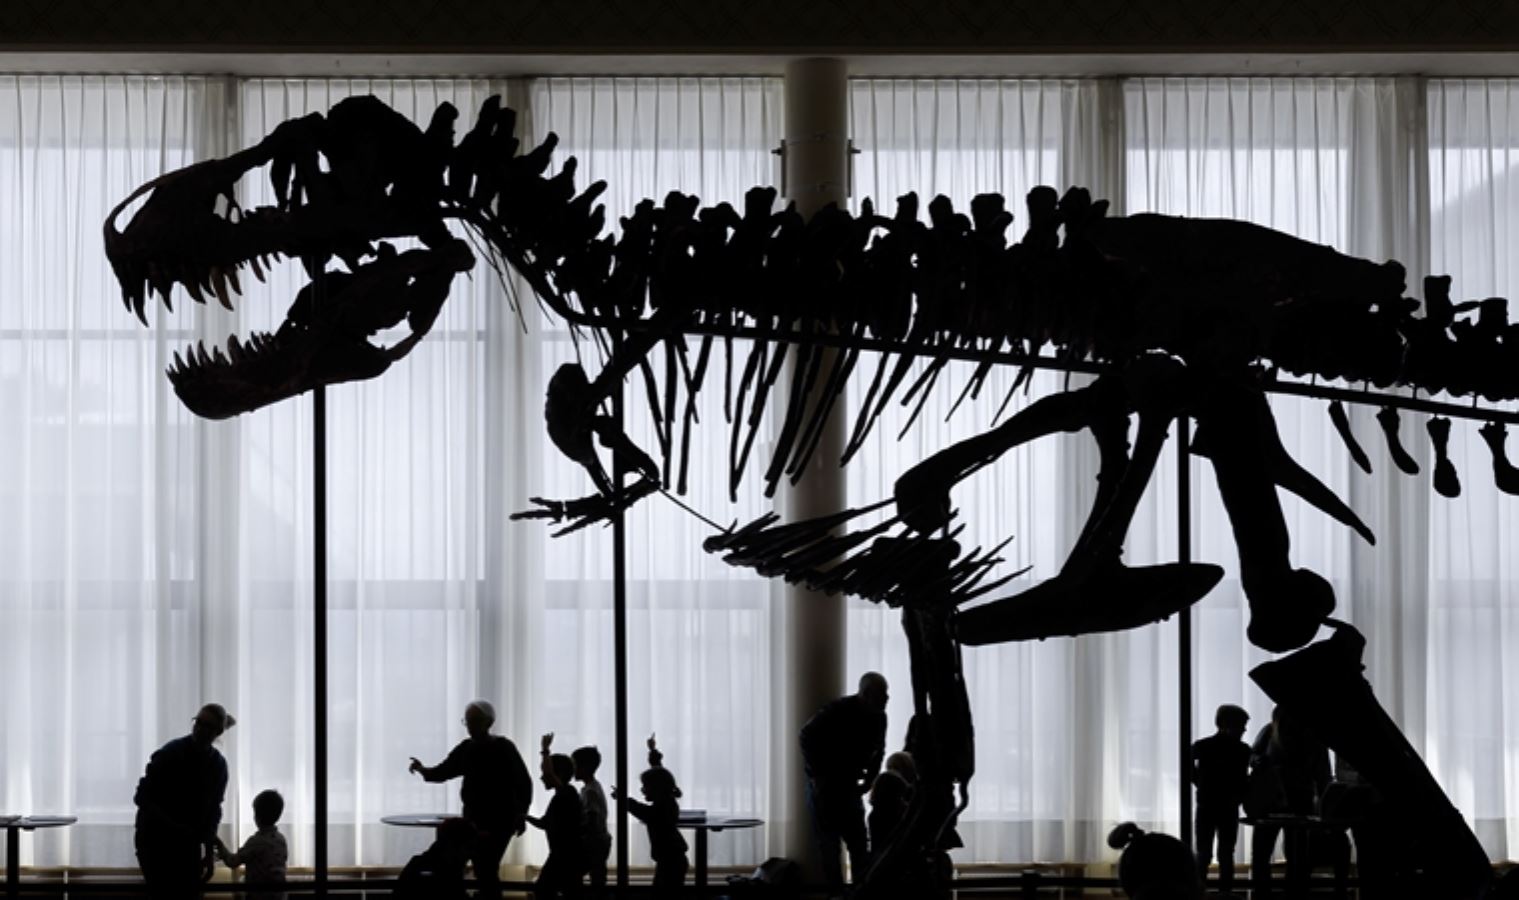 <p>Dinozor iskeleti, Montana ve Wyoming eyaletinde 2008 ve 2013 yılları arasında kazı sonucu çıkarılan 3 dinozorun kemiklerinden oluşuyor. Satışın yapılacağı müzayede evinin sahibi Cyril Koller,<strong><em> "Bu iskeletin adı Trinity, çünkü 3 dinozordan oluşuyor"</em></strong> ifadelerini kullandı.</p>